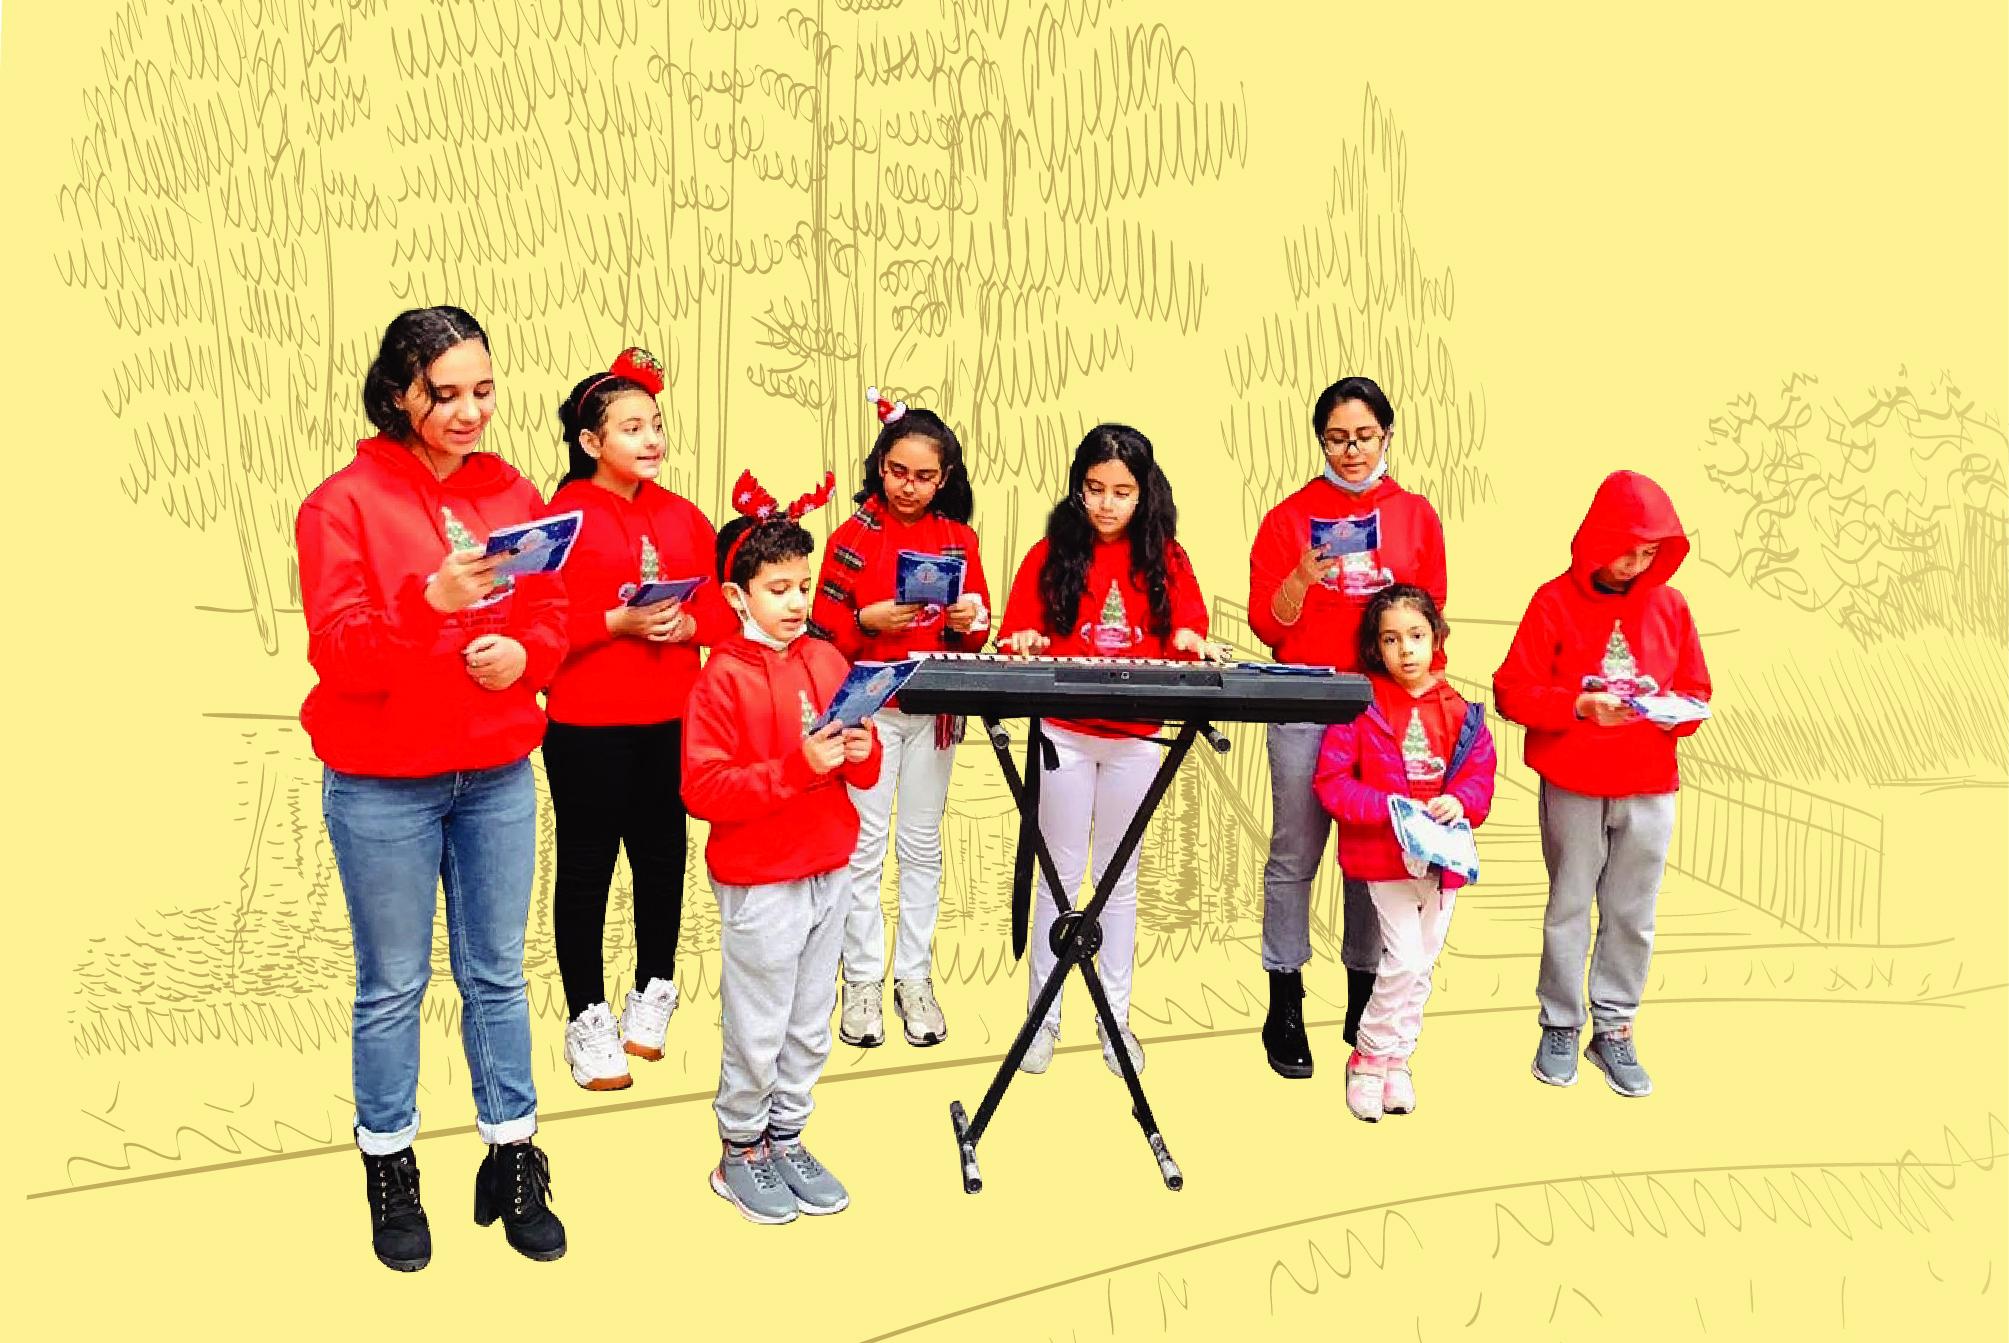 由文化體育及旅遊局呈獻、康樂及文化事務署策劃的全新藝術節「亞藝無疆」將於十月至十一月舉行，展現以亞洲為主軸及一帶一路地區的不同文化。由本地埃及裔年輕人組成的埃及青少年合唱團，將以阿拉伯語、英語、科普特語演唱埃及歌曲和科普特聖詩。

